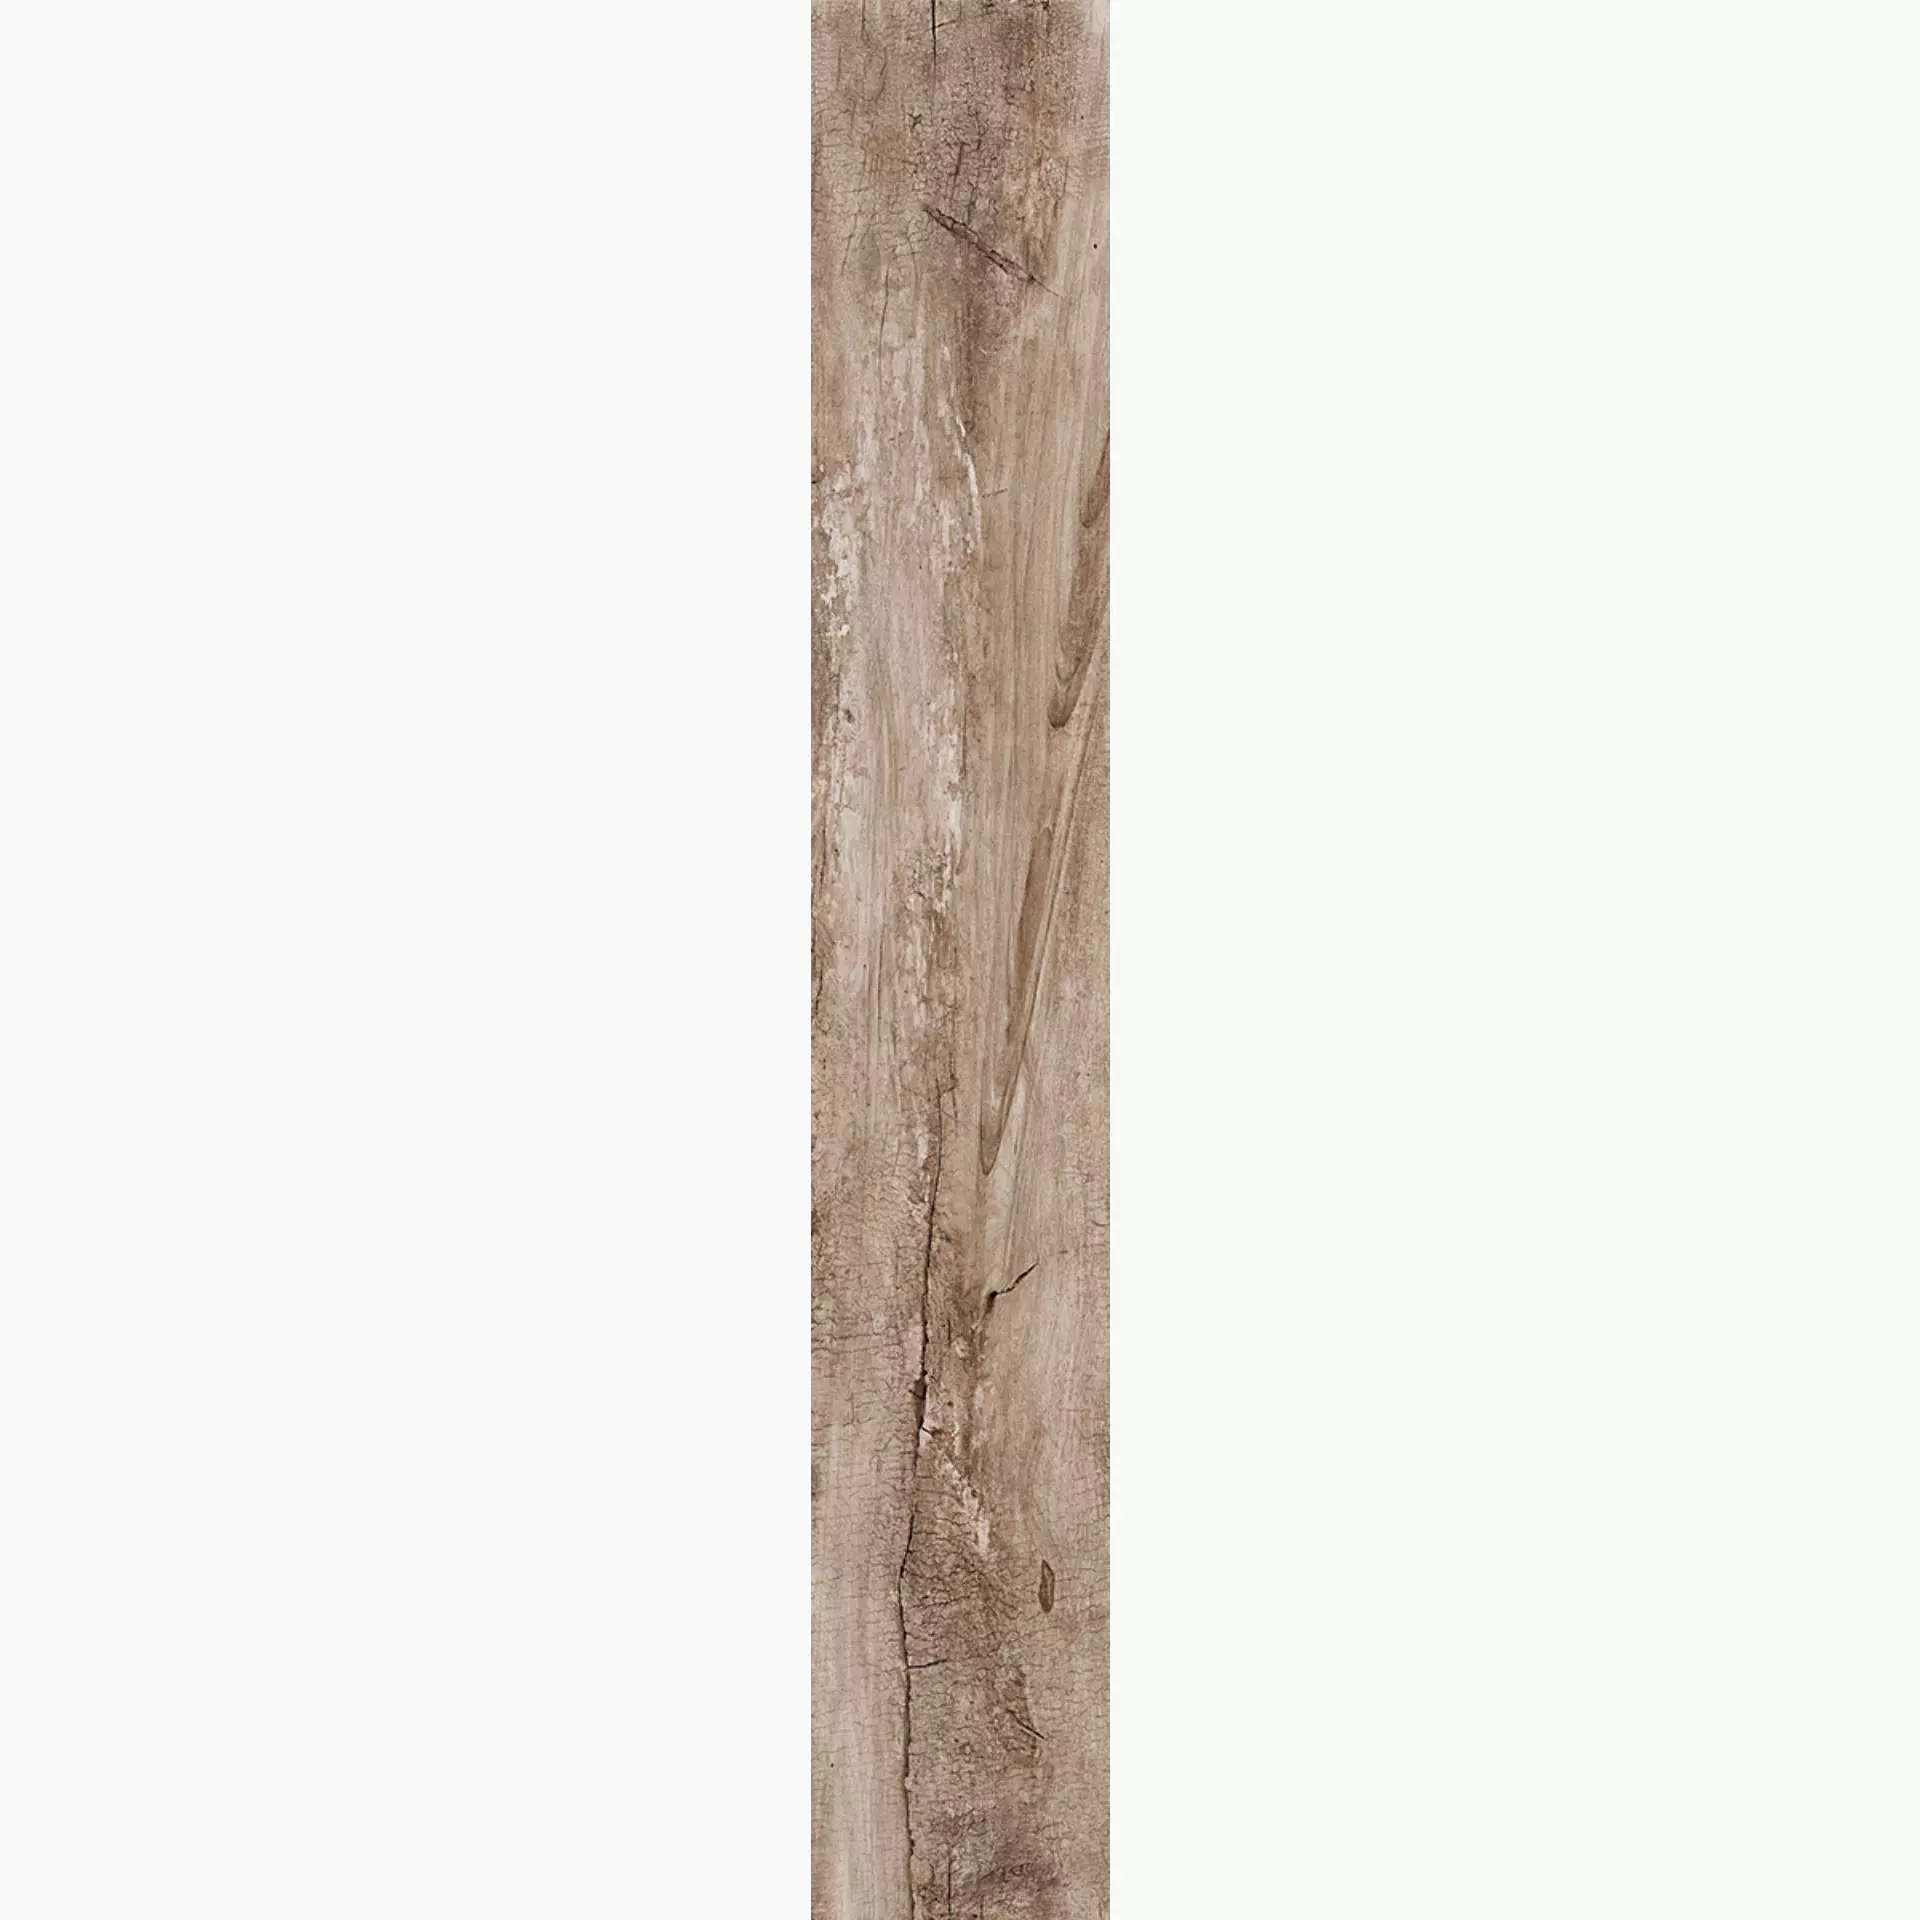 Rondine Living Marrone Naturale J86021 15x100cm 9,5mm